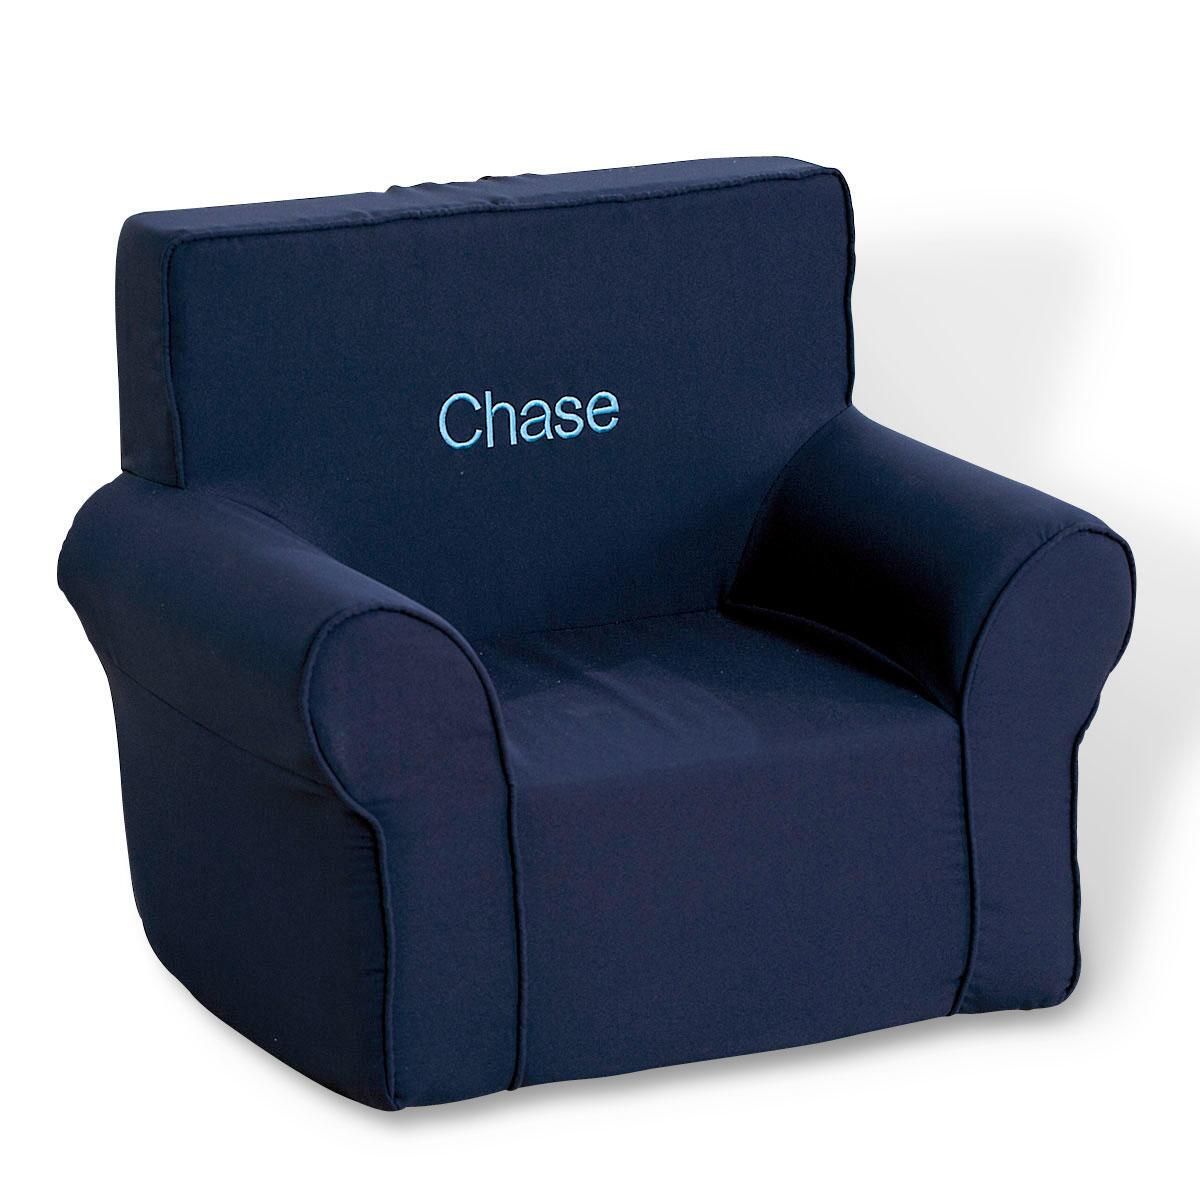 Sleepless Kids Lounge Chair - Childhome Rocking Lounge Chair Grey